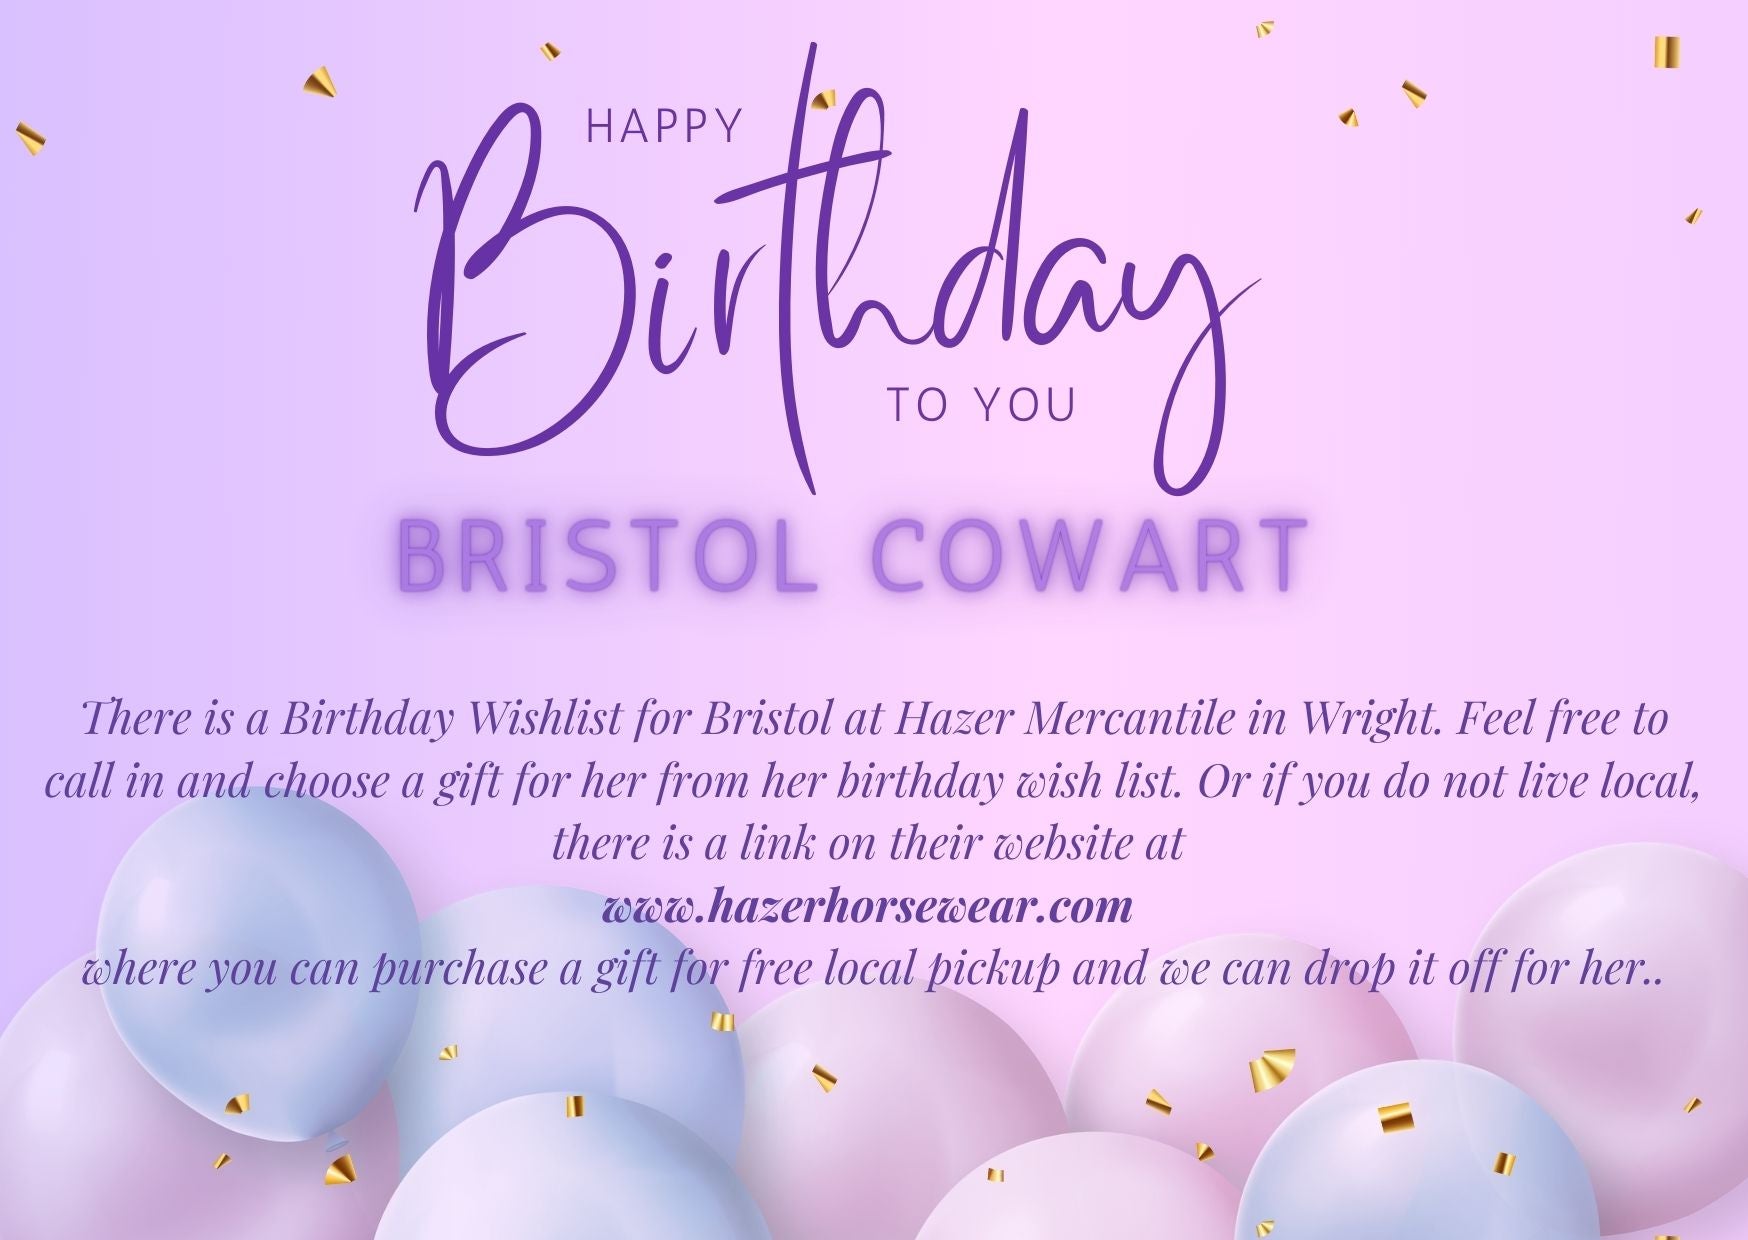 Bristol Cowart Birthday Wishlist